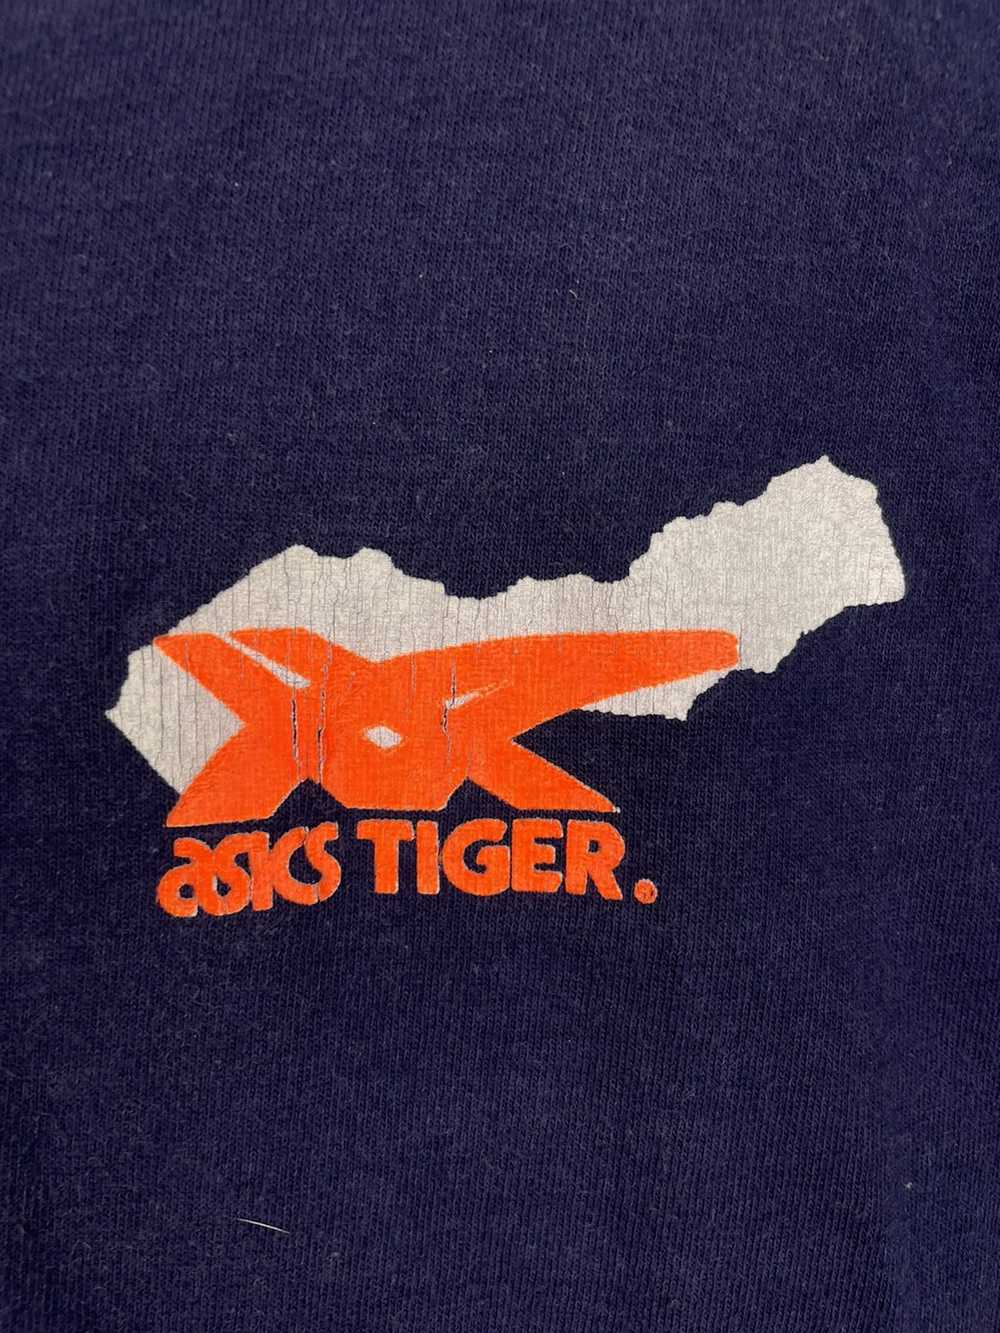 Asics × Vintage Vintage 80s Asics Tiger t shirt - image 4